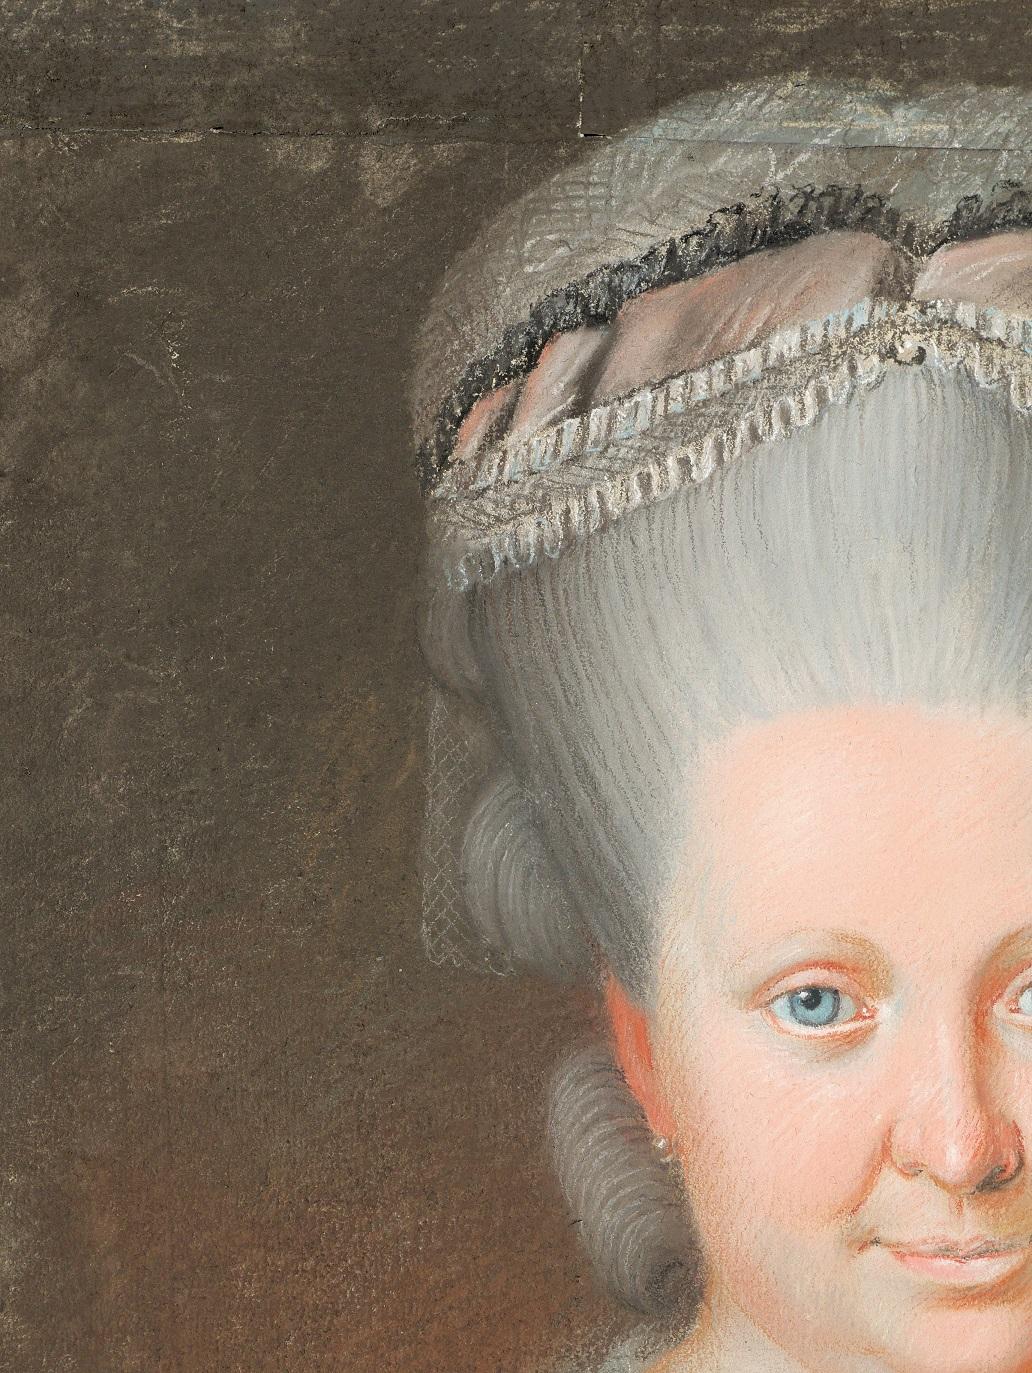 Französische Schule des 18. Jahrhunderts
Porträt einer Frau
Pastell auf Papier auf Leinwand aufgezogen
Pastell: 46,5 x 63 cm (18,3 x 24,8 Zoll)
Rahmen: 57 x 71 cm (22,4 x 28 Zoll)
Sehr guter Zustand
CIRCA 1770-80

Das Pastell ist auf Papier auf